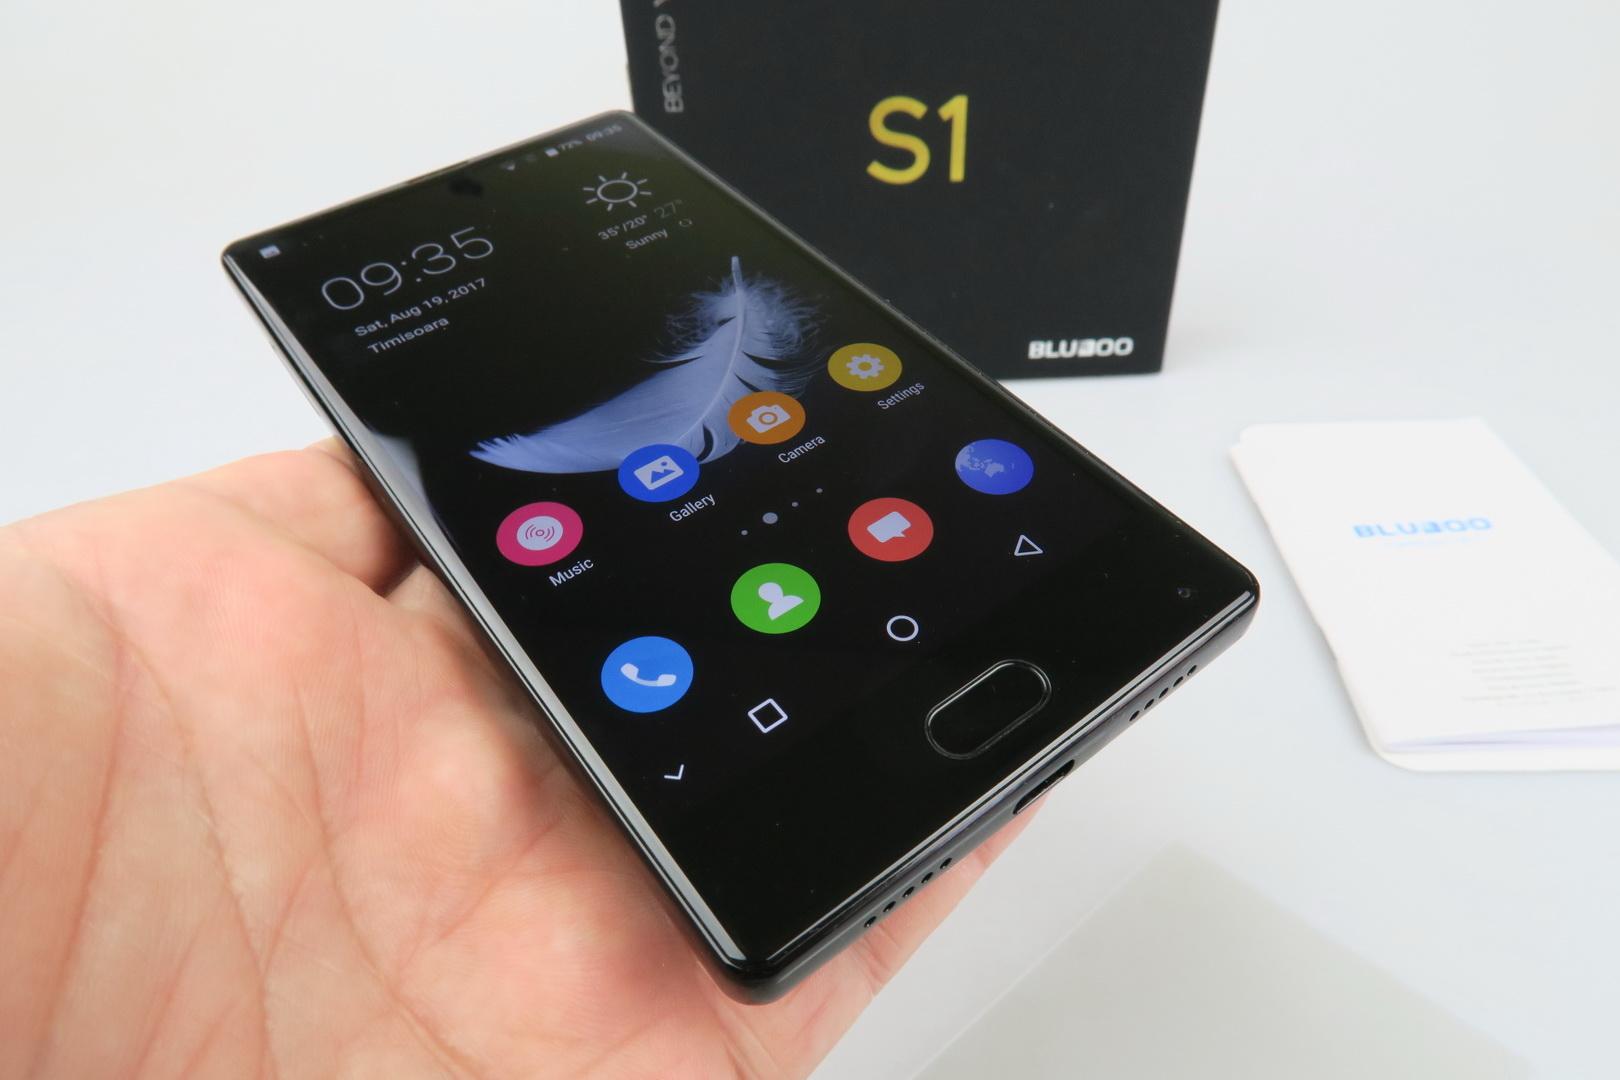 Видео-обзор смартфона Bluboo S1 демонстрирует его превосходный дизайн 